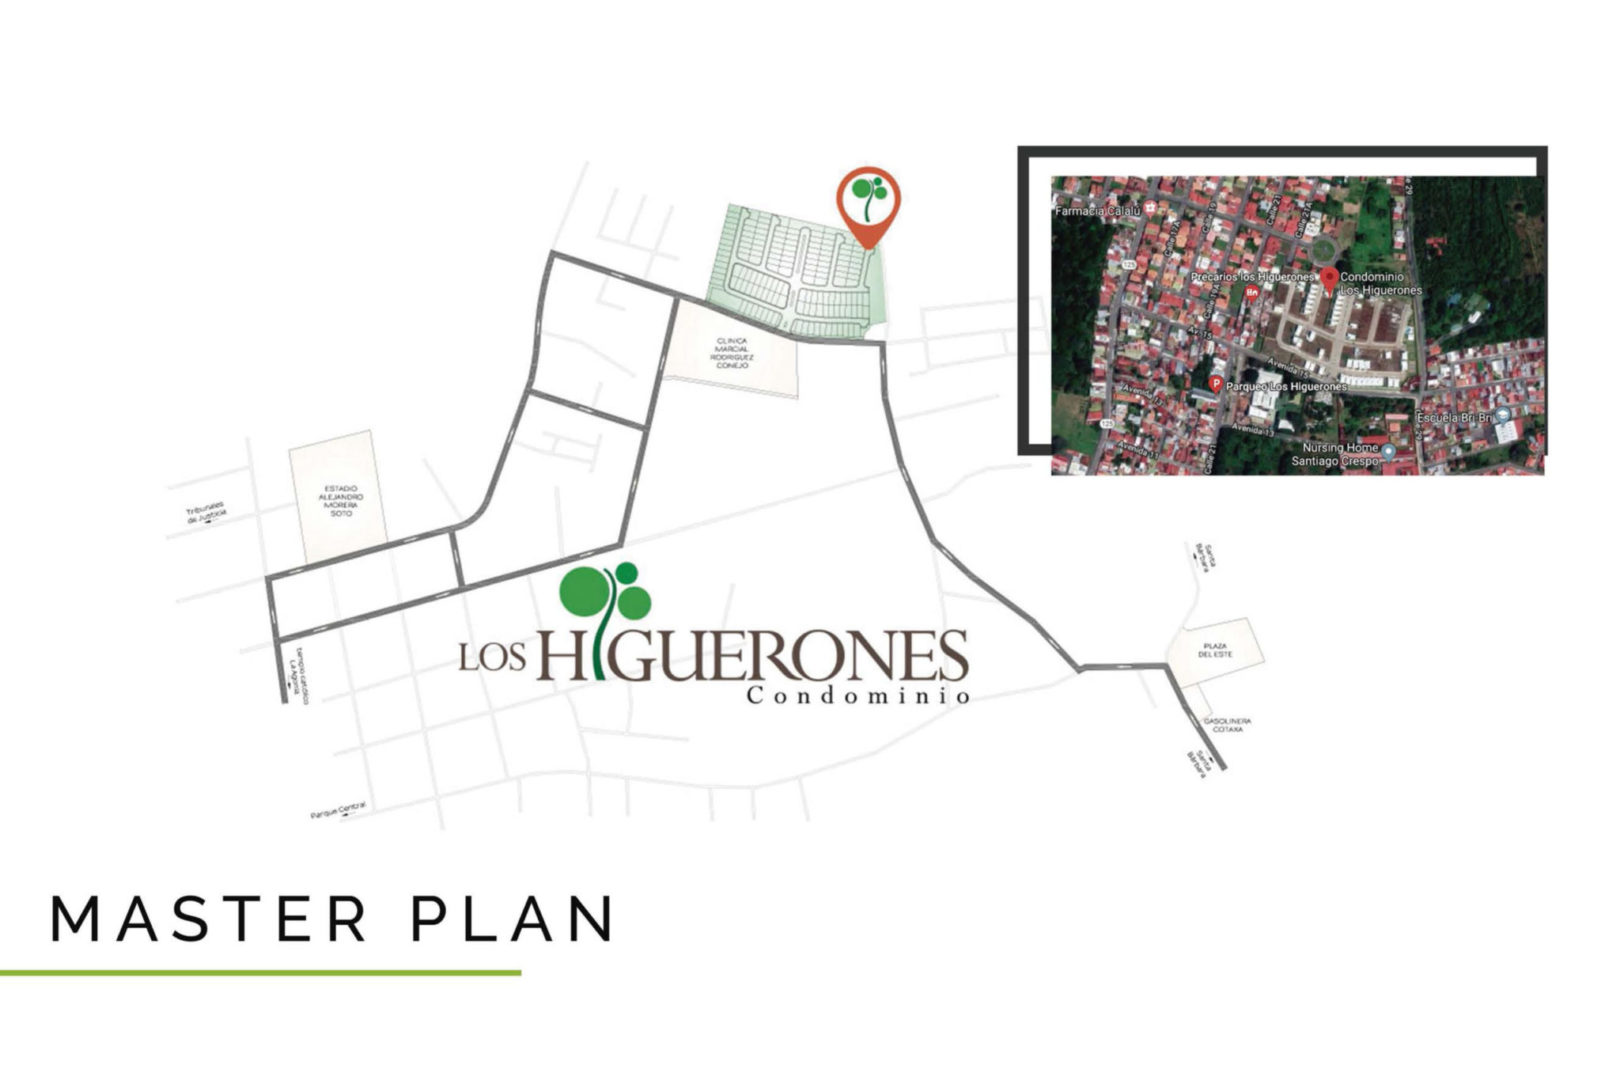 Presentacion-Condominio-Los-Higuerones-10-scaled.jpg